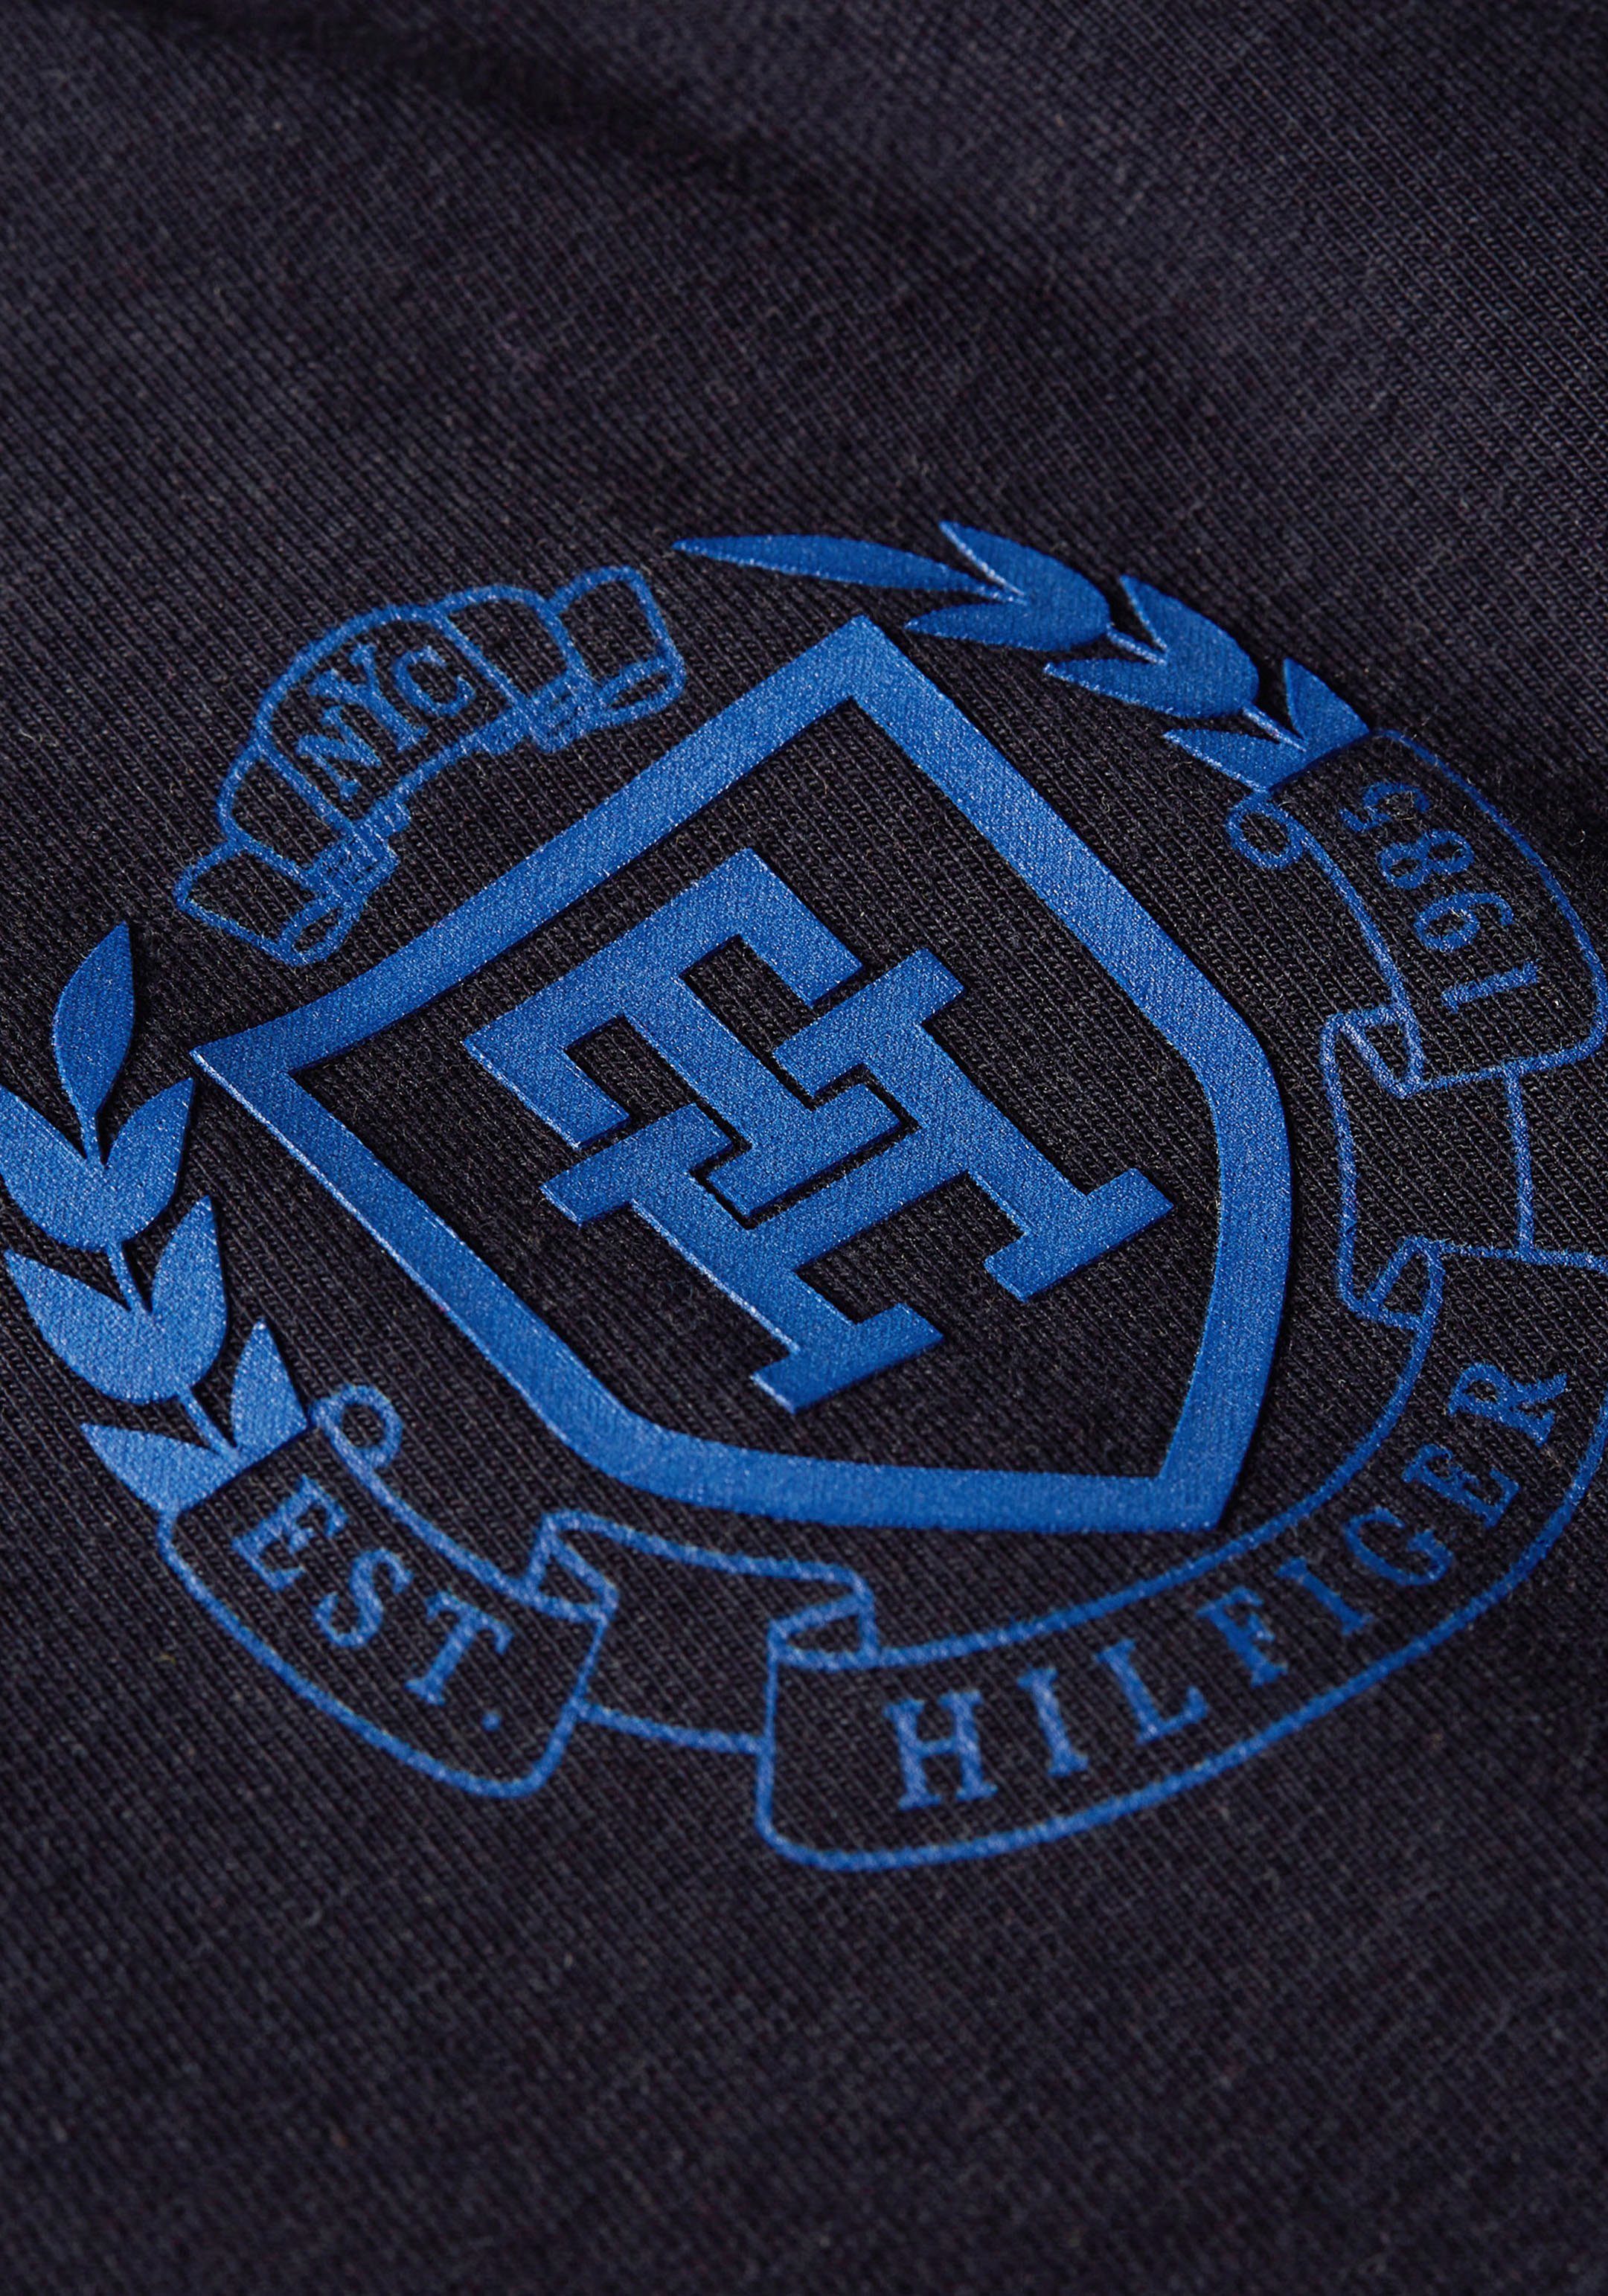 dunkelblau T-Shirt mit Tommy Hilfiger Markenlabel